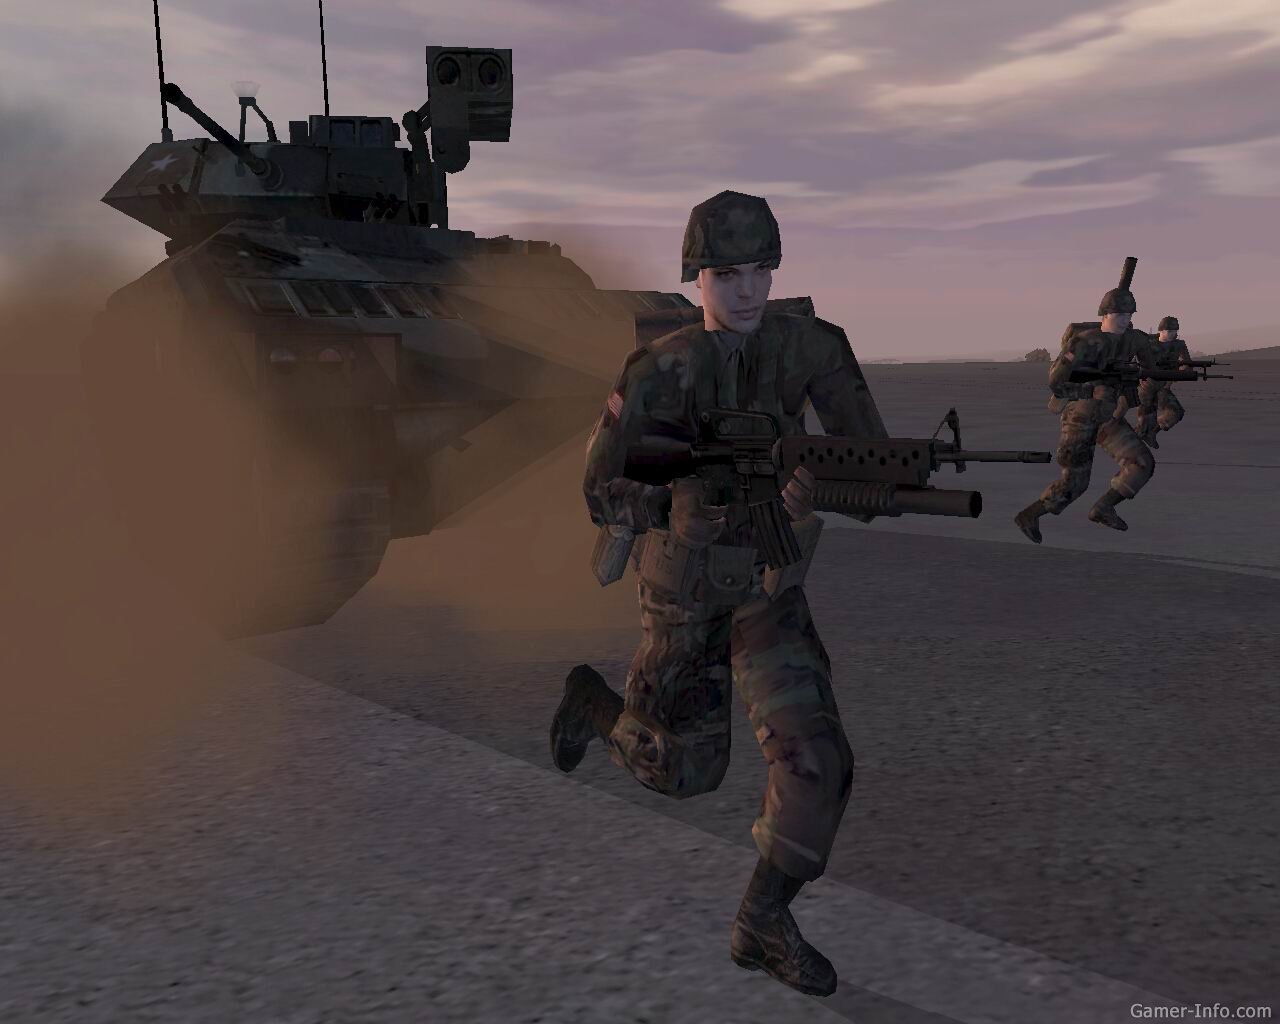 G1 > Games - NOTÍCIAS - Jogo de guerra 'Operation flashpoint